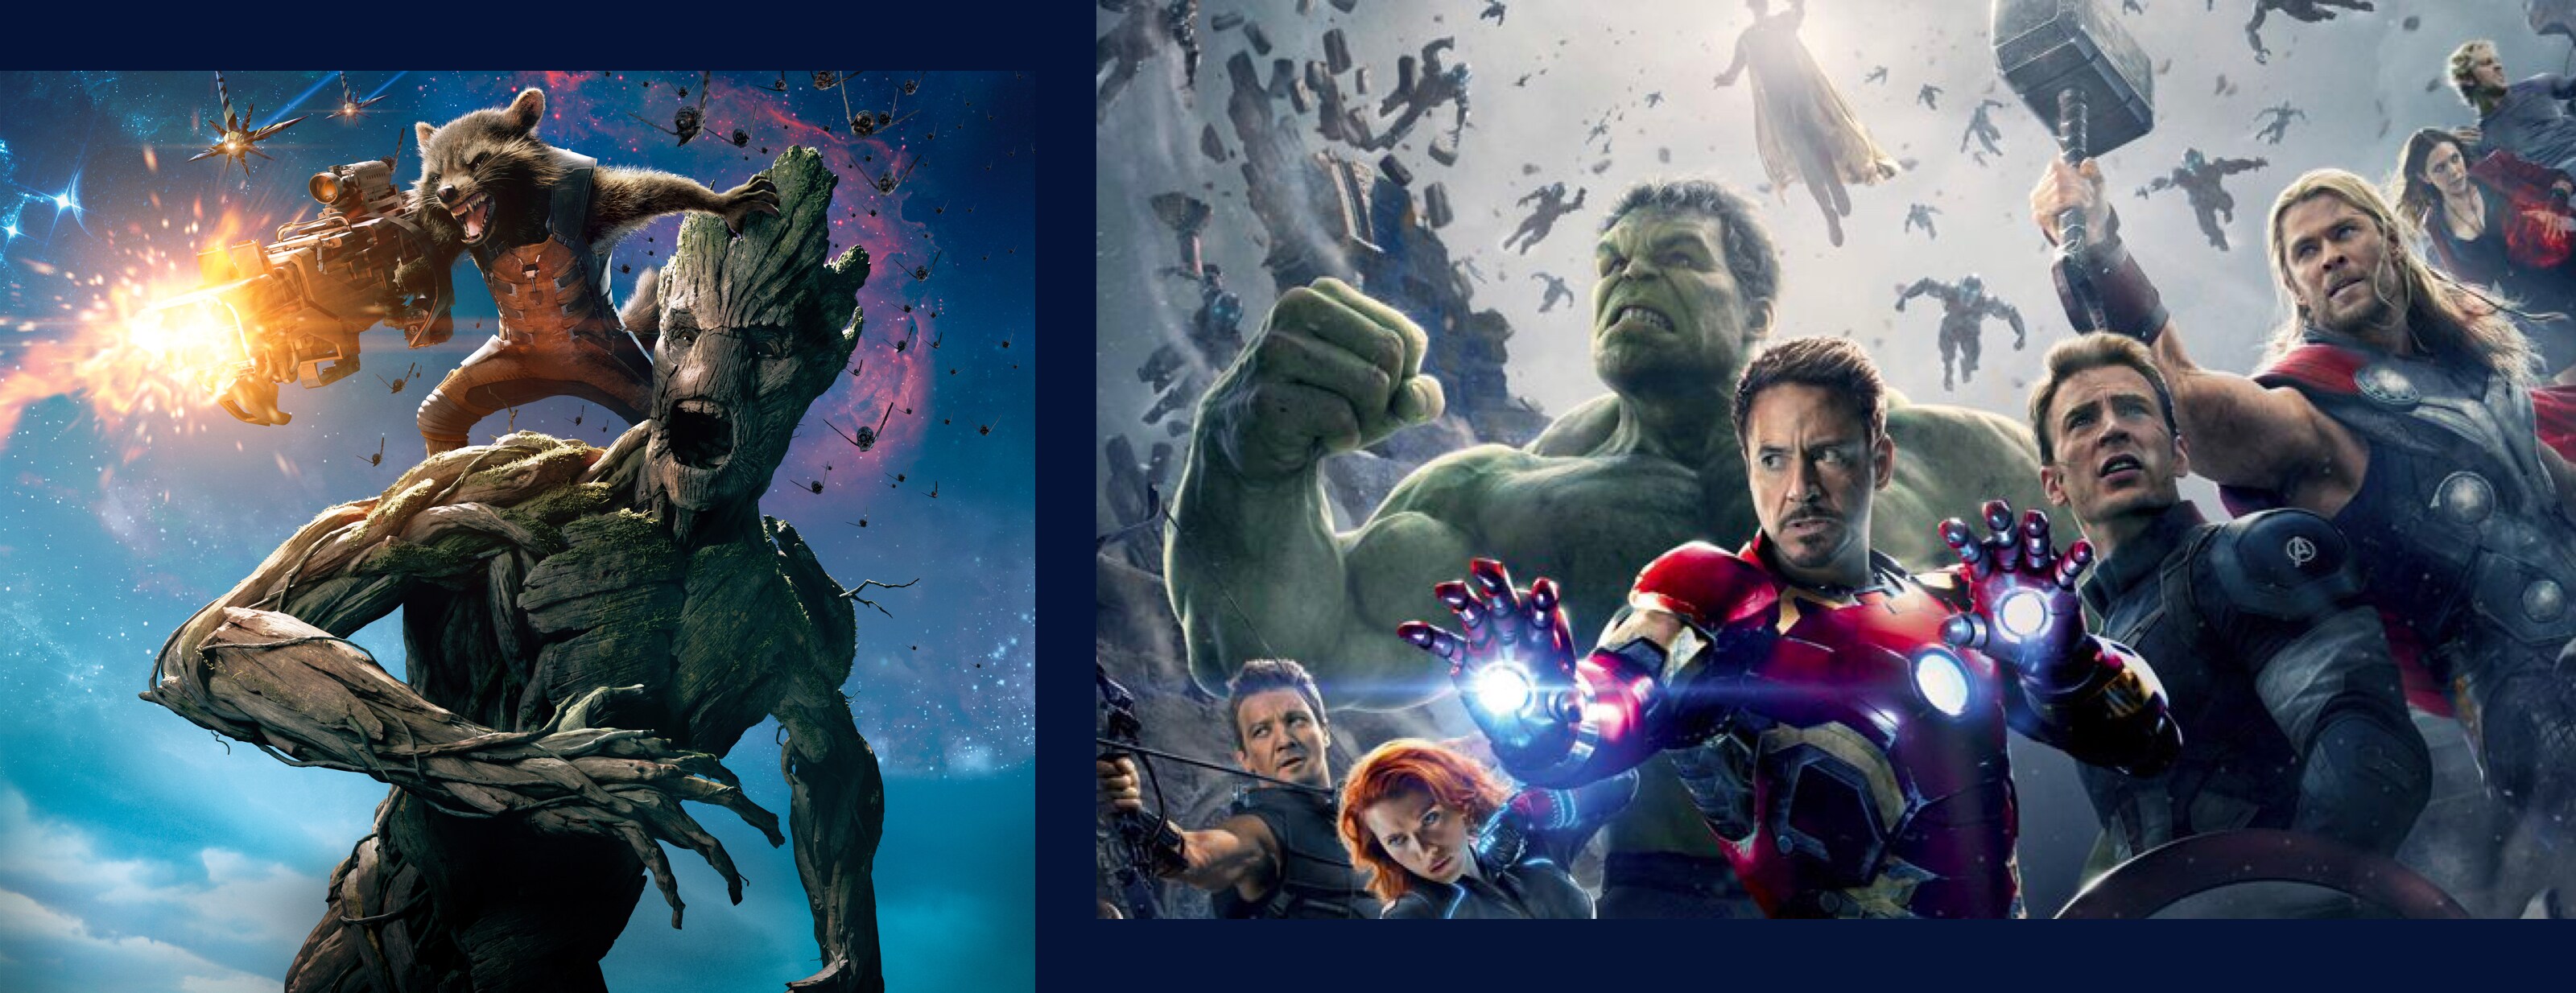 Fermo immagine de I Guardiani della Galassia e di Avengers: Infinity War